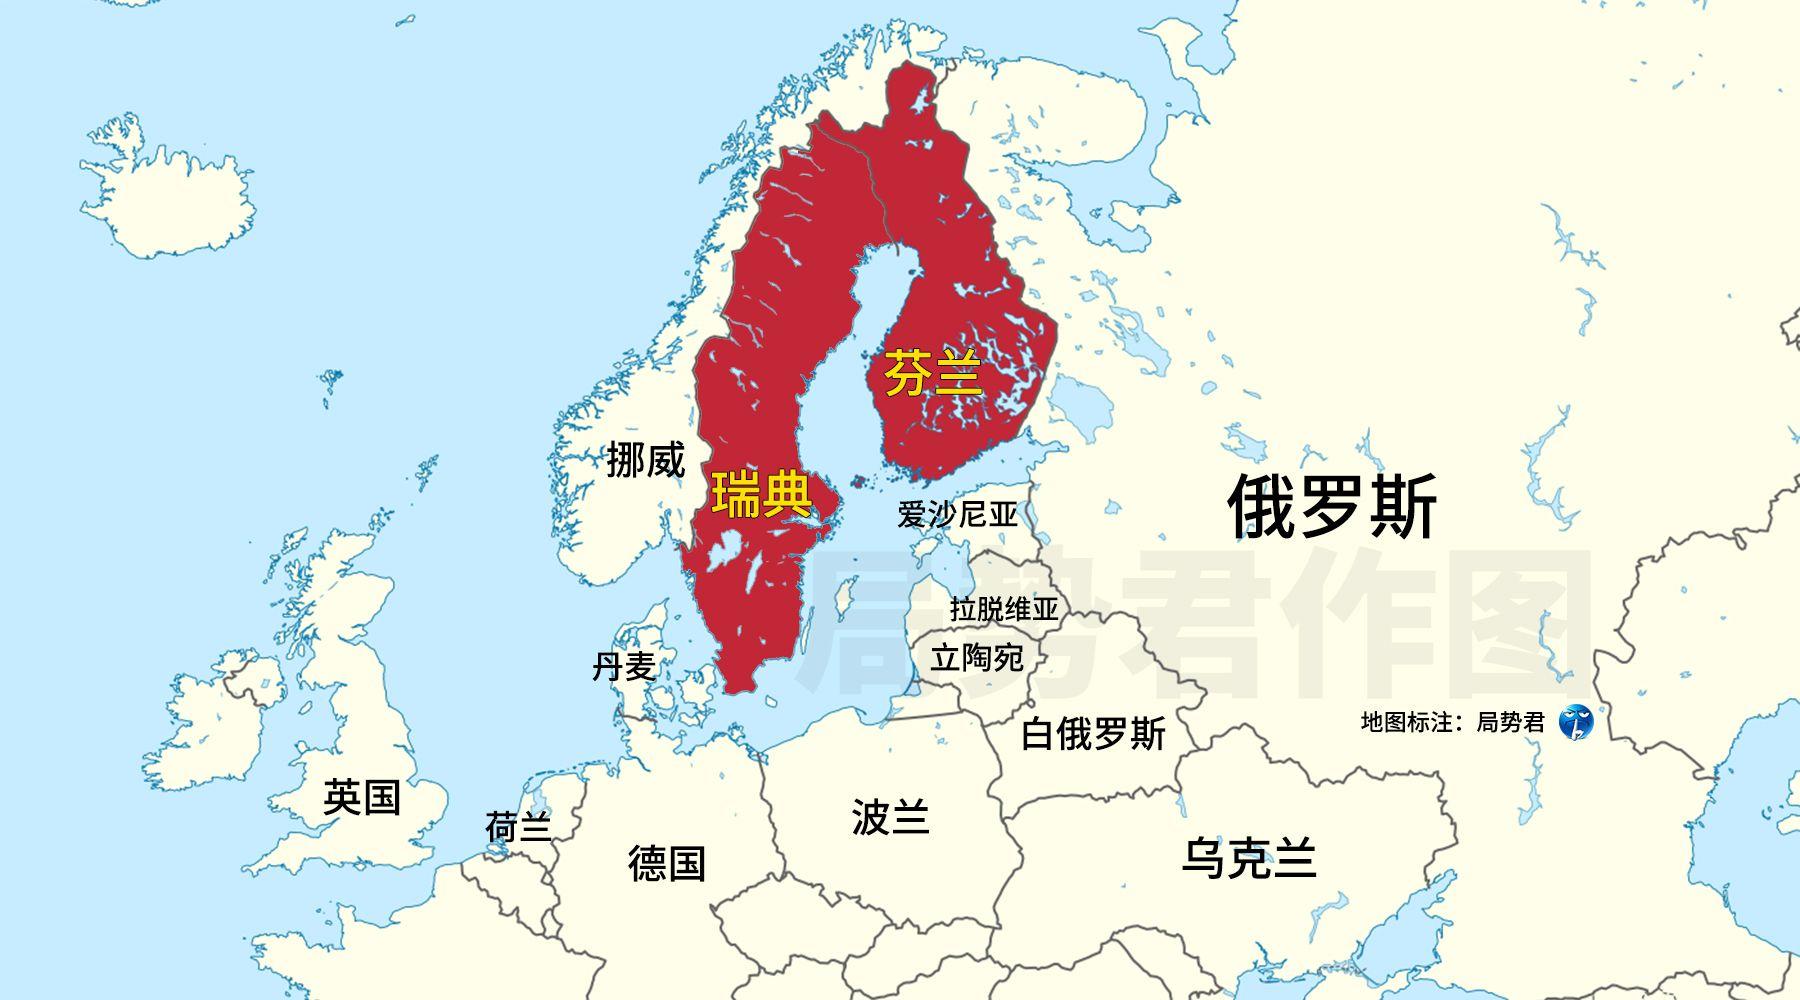 局势君 的想法: 瑞典宣布向拉脱维亚派遣军队,官方宣布是为北约对